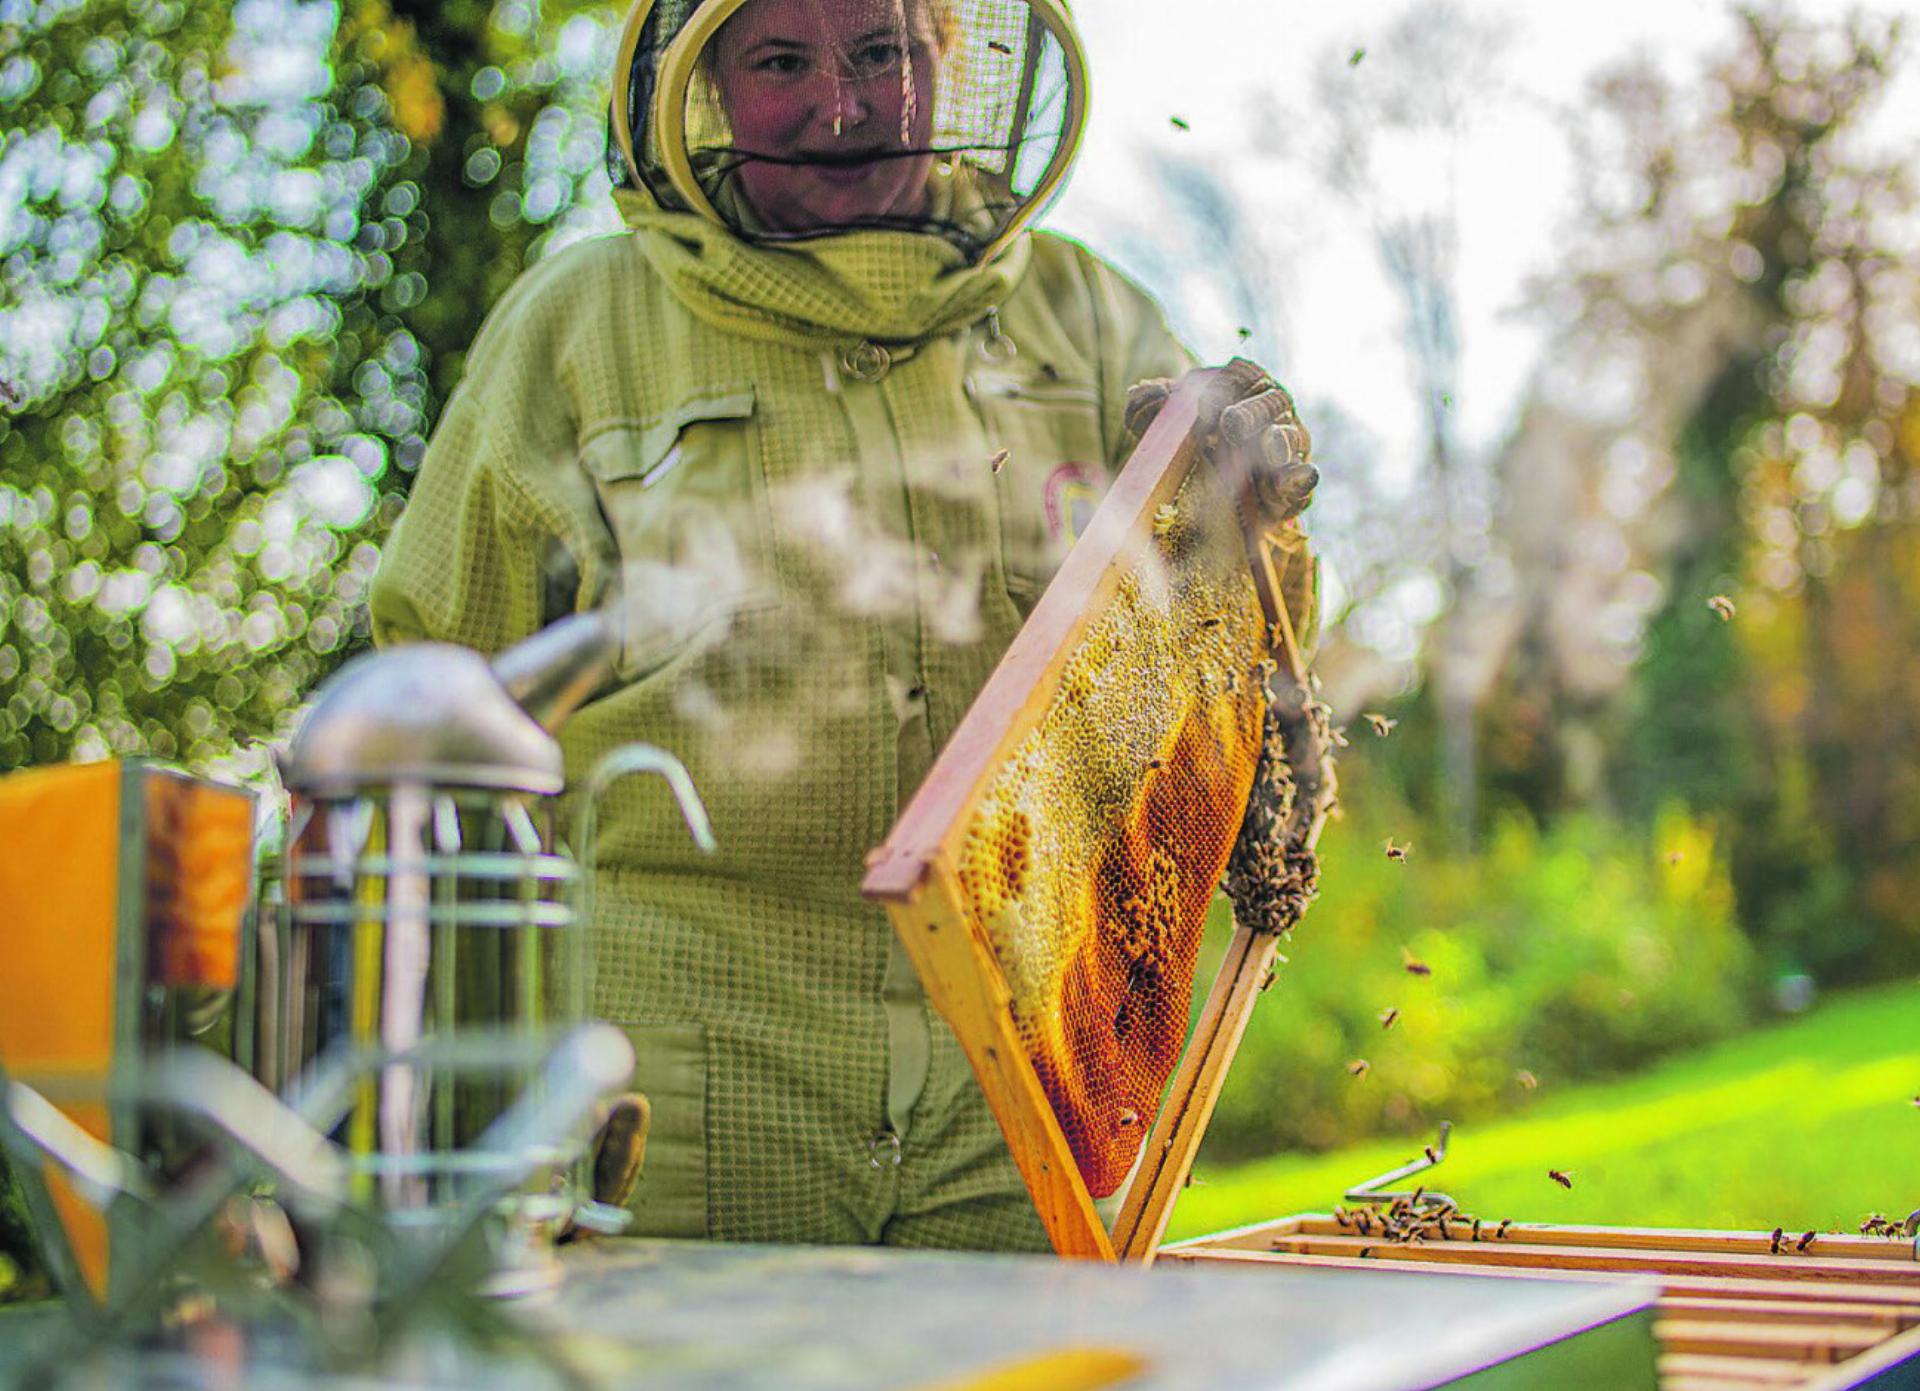 Der bevorstehende Frühling ist für Kathrin Hauser eine besondere Jahreszeit, da endlich die Zeit kommt, die Bienenvölker zu besuchen.